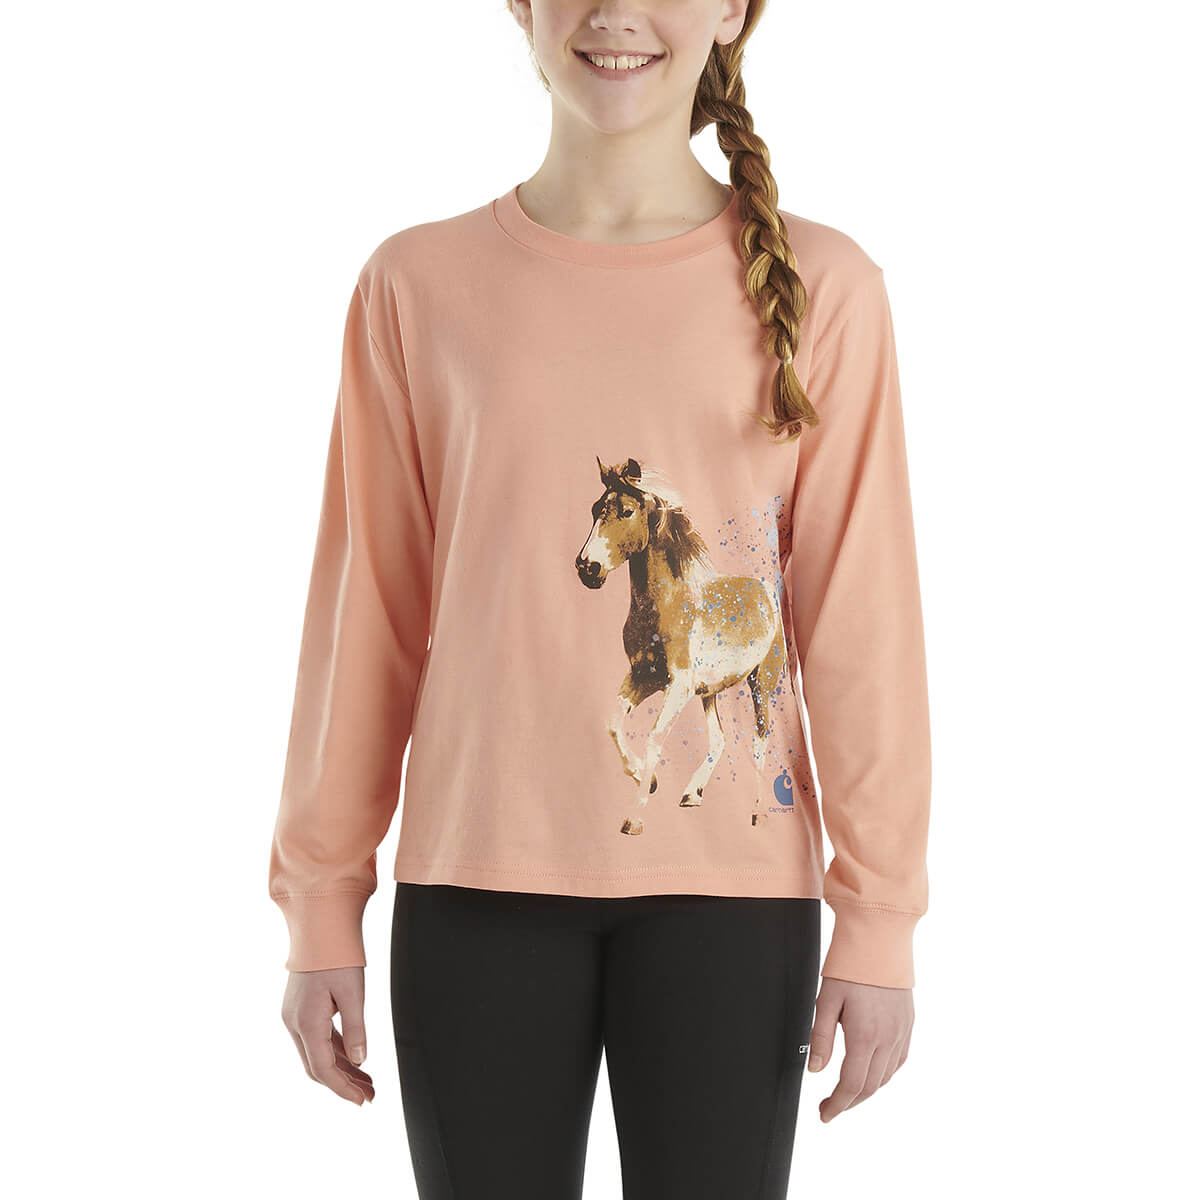 Carhartt Toddler's Long Sleeve Running Horse T-Shirt - Peach Amber